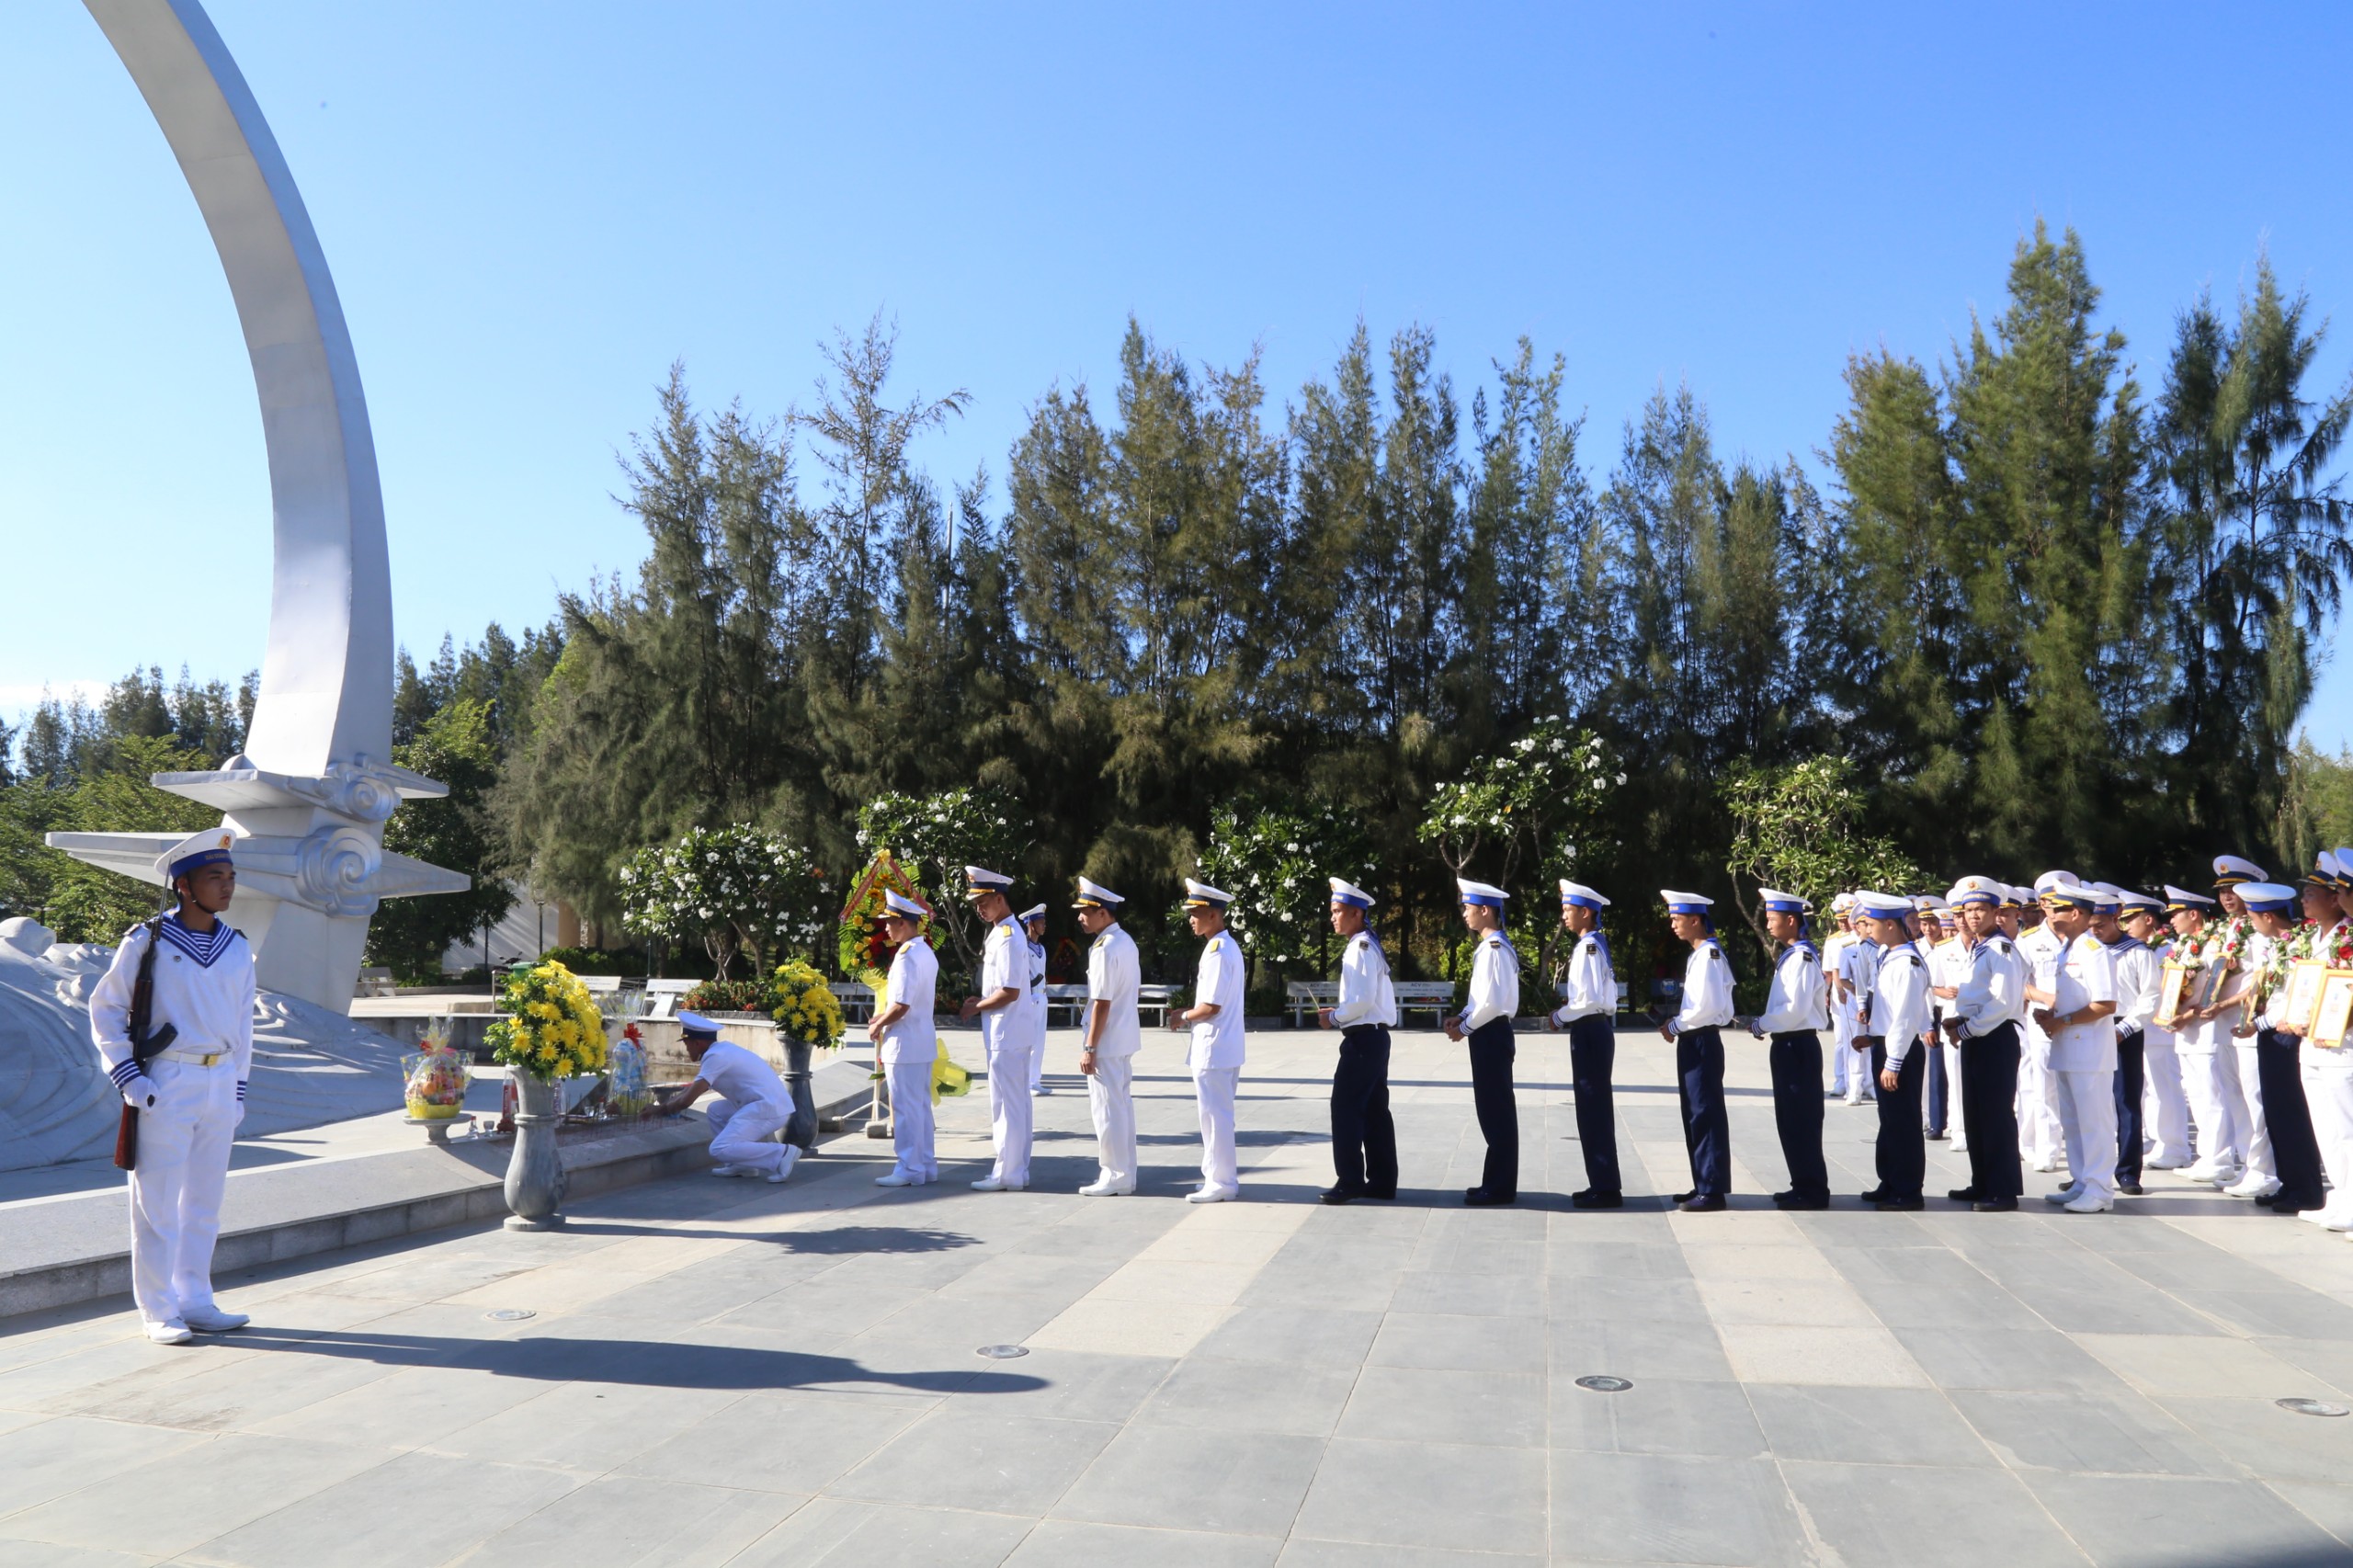 Vùng 4 Hải quân tổ chức nhiều hoạt động chào mừng Đại hội đại biểu Đoàn thanh niên Cộng sản Hồ Chí Minh lần thứ IX